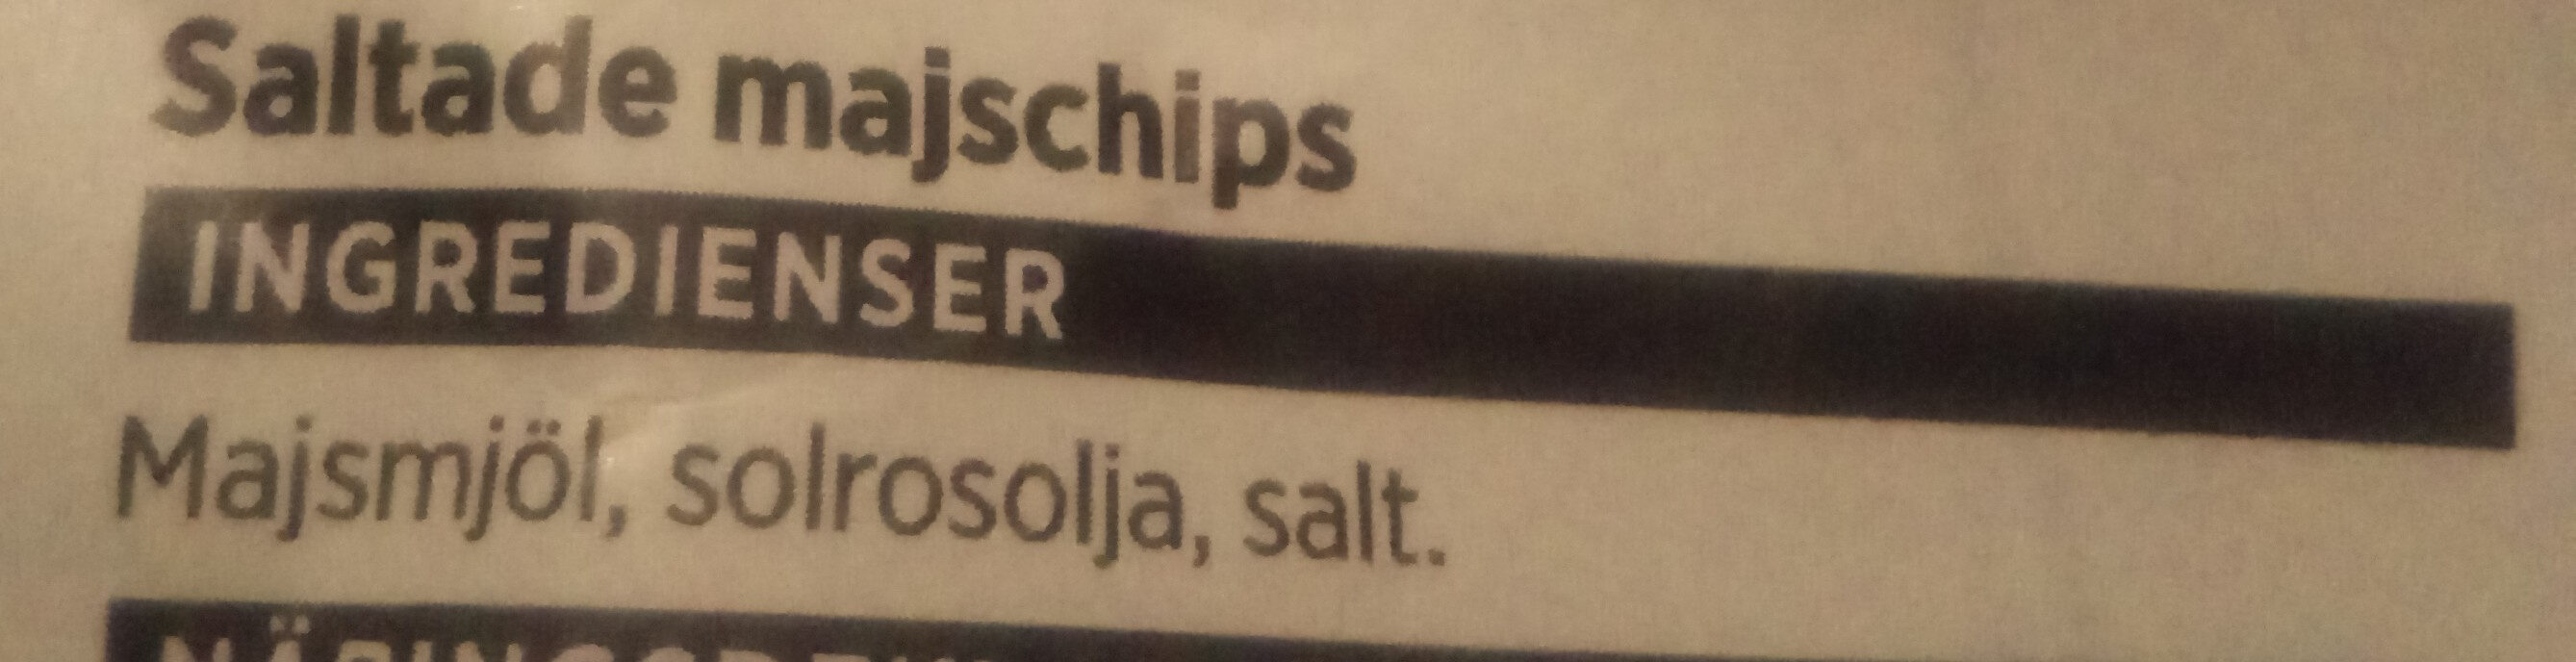 Nacho Chips Saltade - Ingredienser - sv